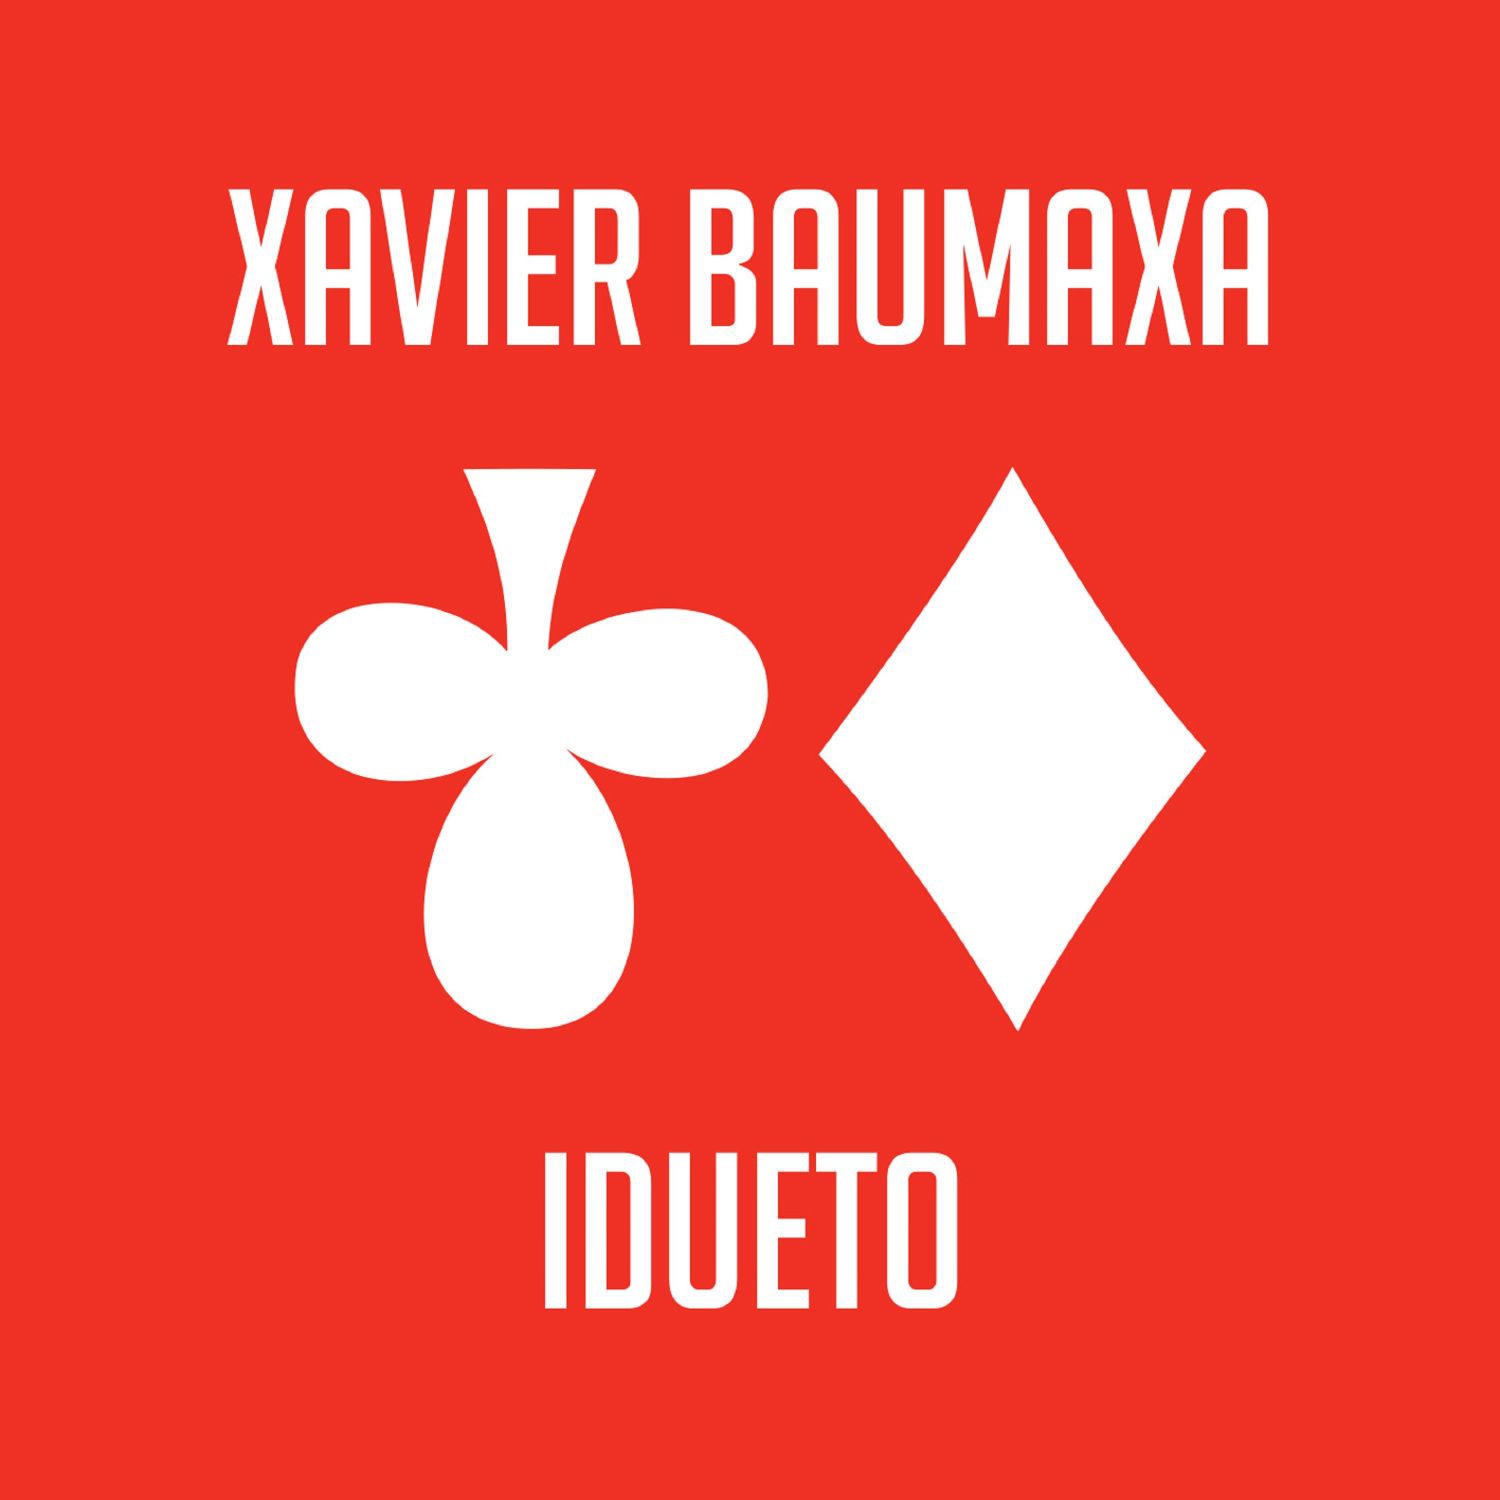 CD Shop - BAUMAXA XAVIER IDUETO